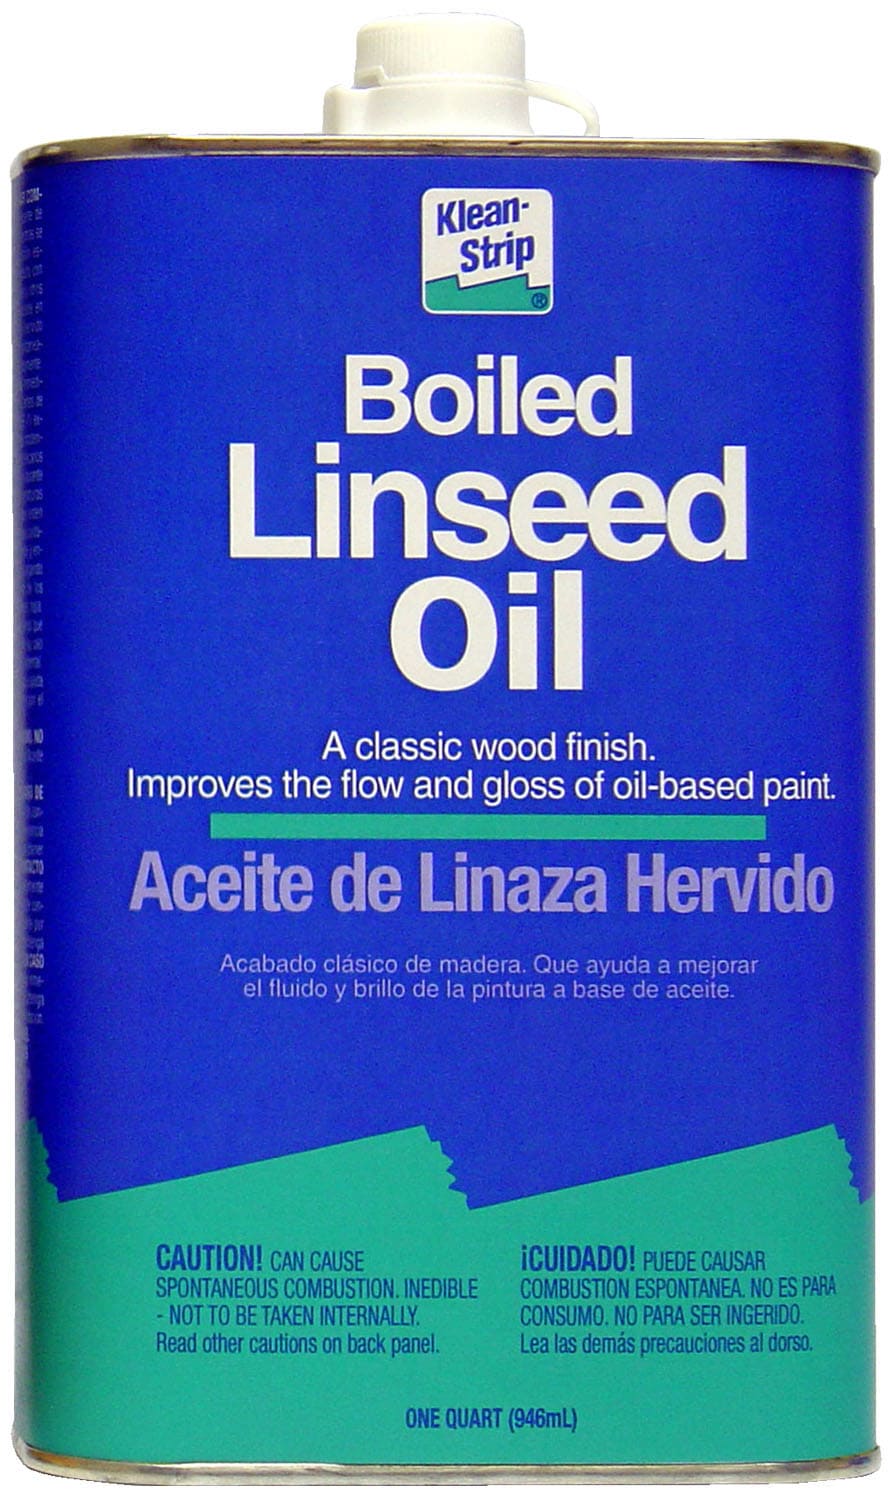 Klean-Strip 32-fl oz Boiled Linseed Oil at